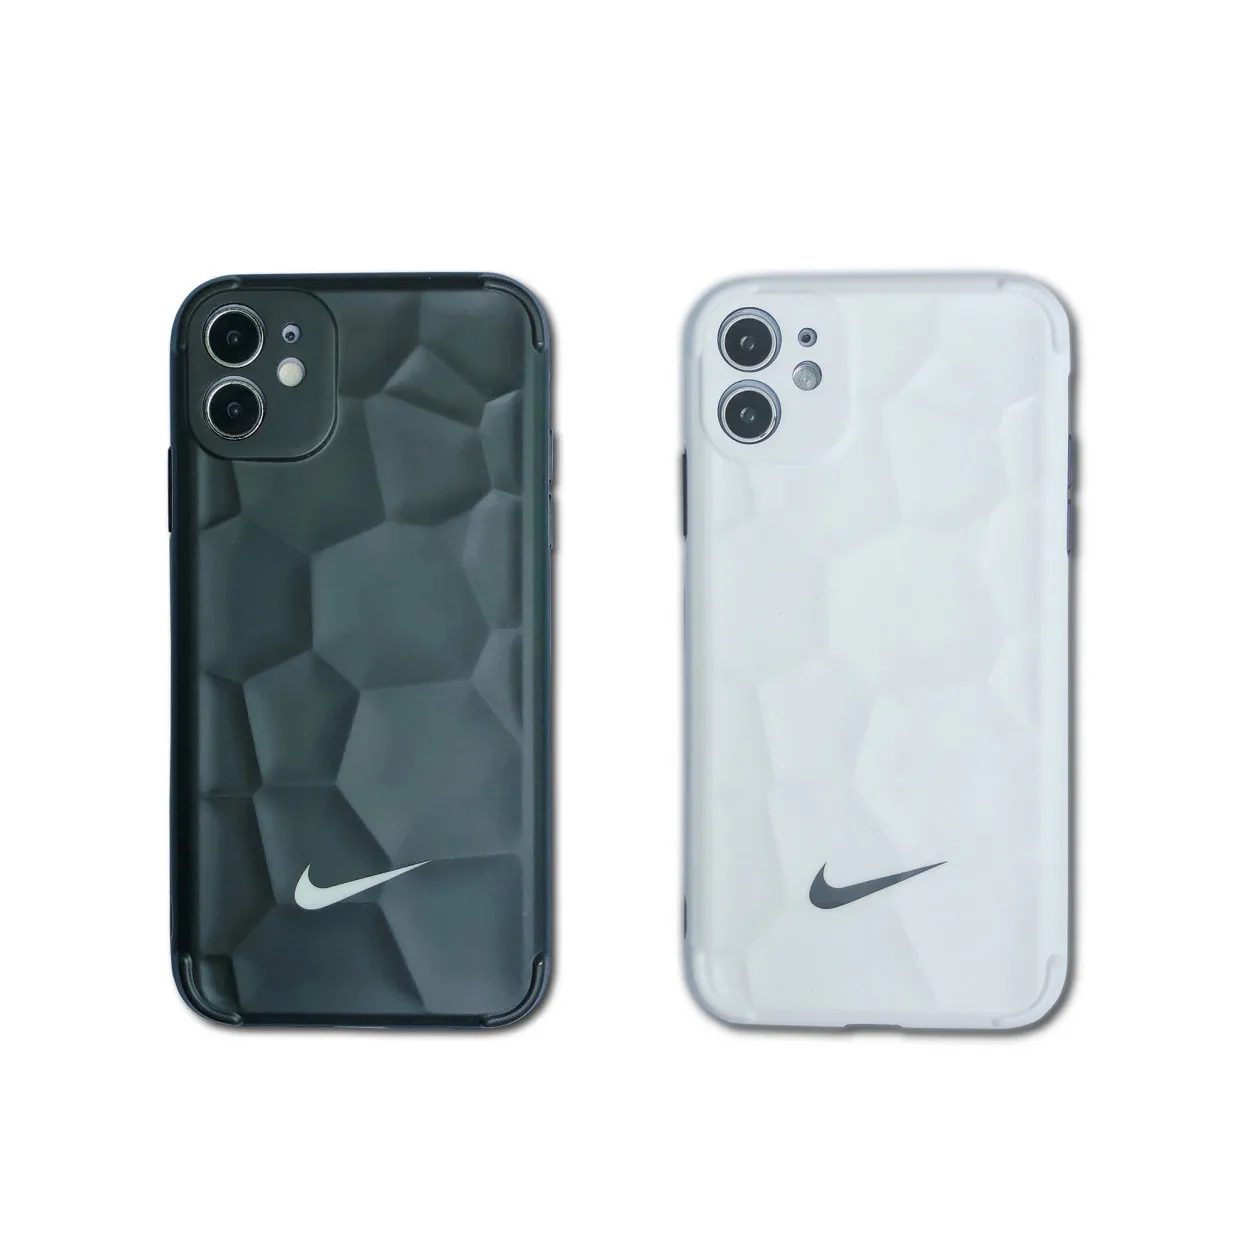 2022 özel yumuşak silikon marka logosu kasa handphone cep telefonu kabuk aksesuarları Iphone 13 12 Mini Pro Max Xr xs